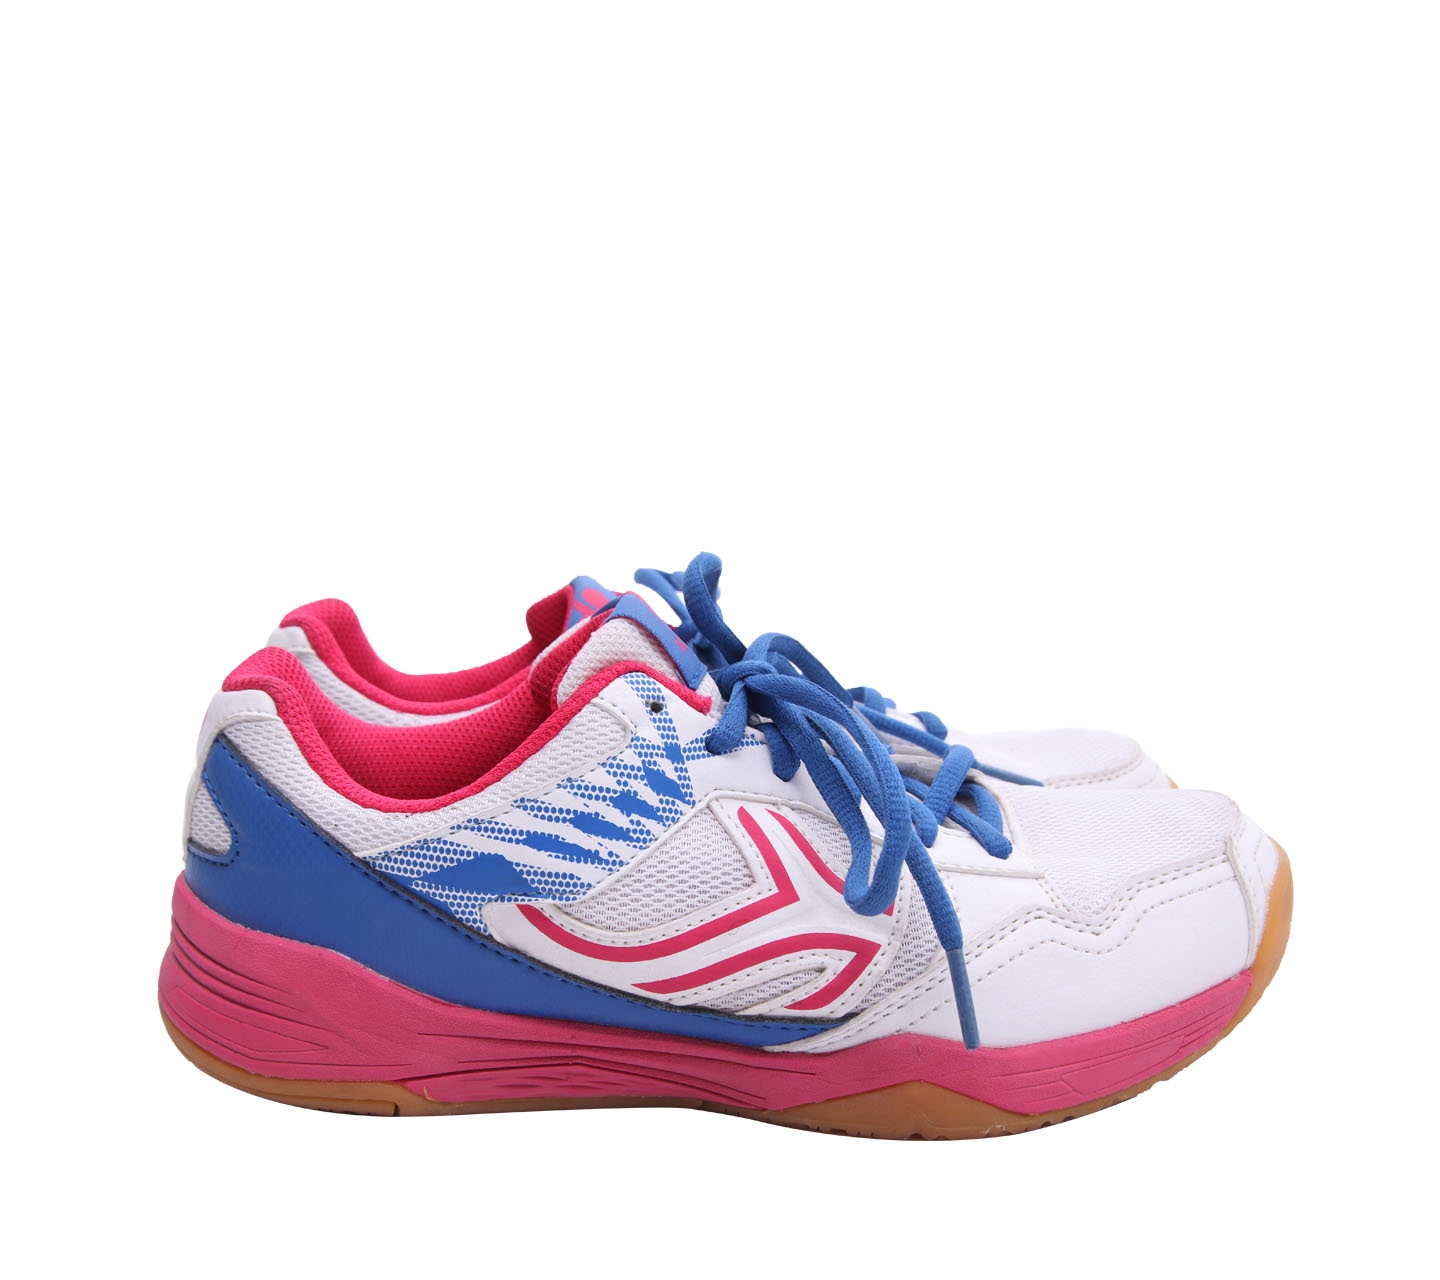 Decathlon Multicolor Tennis Shoes Sneakers